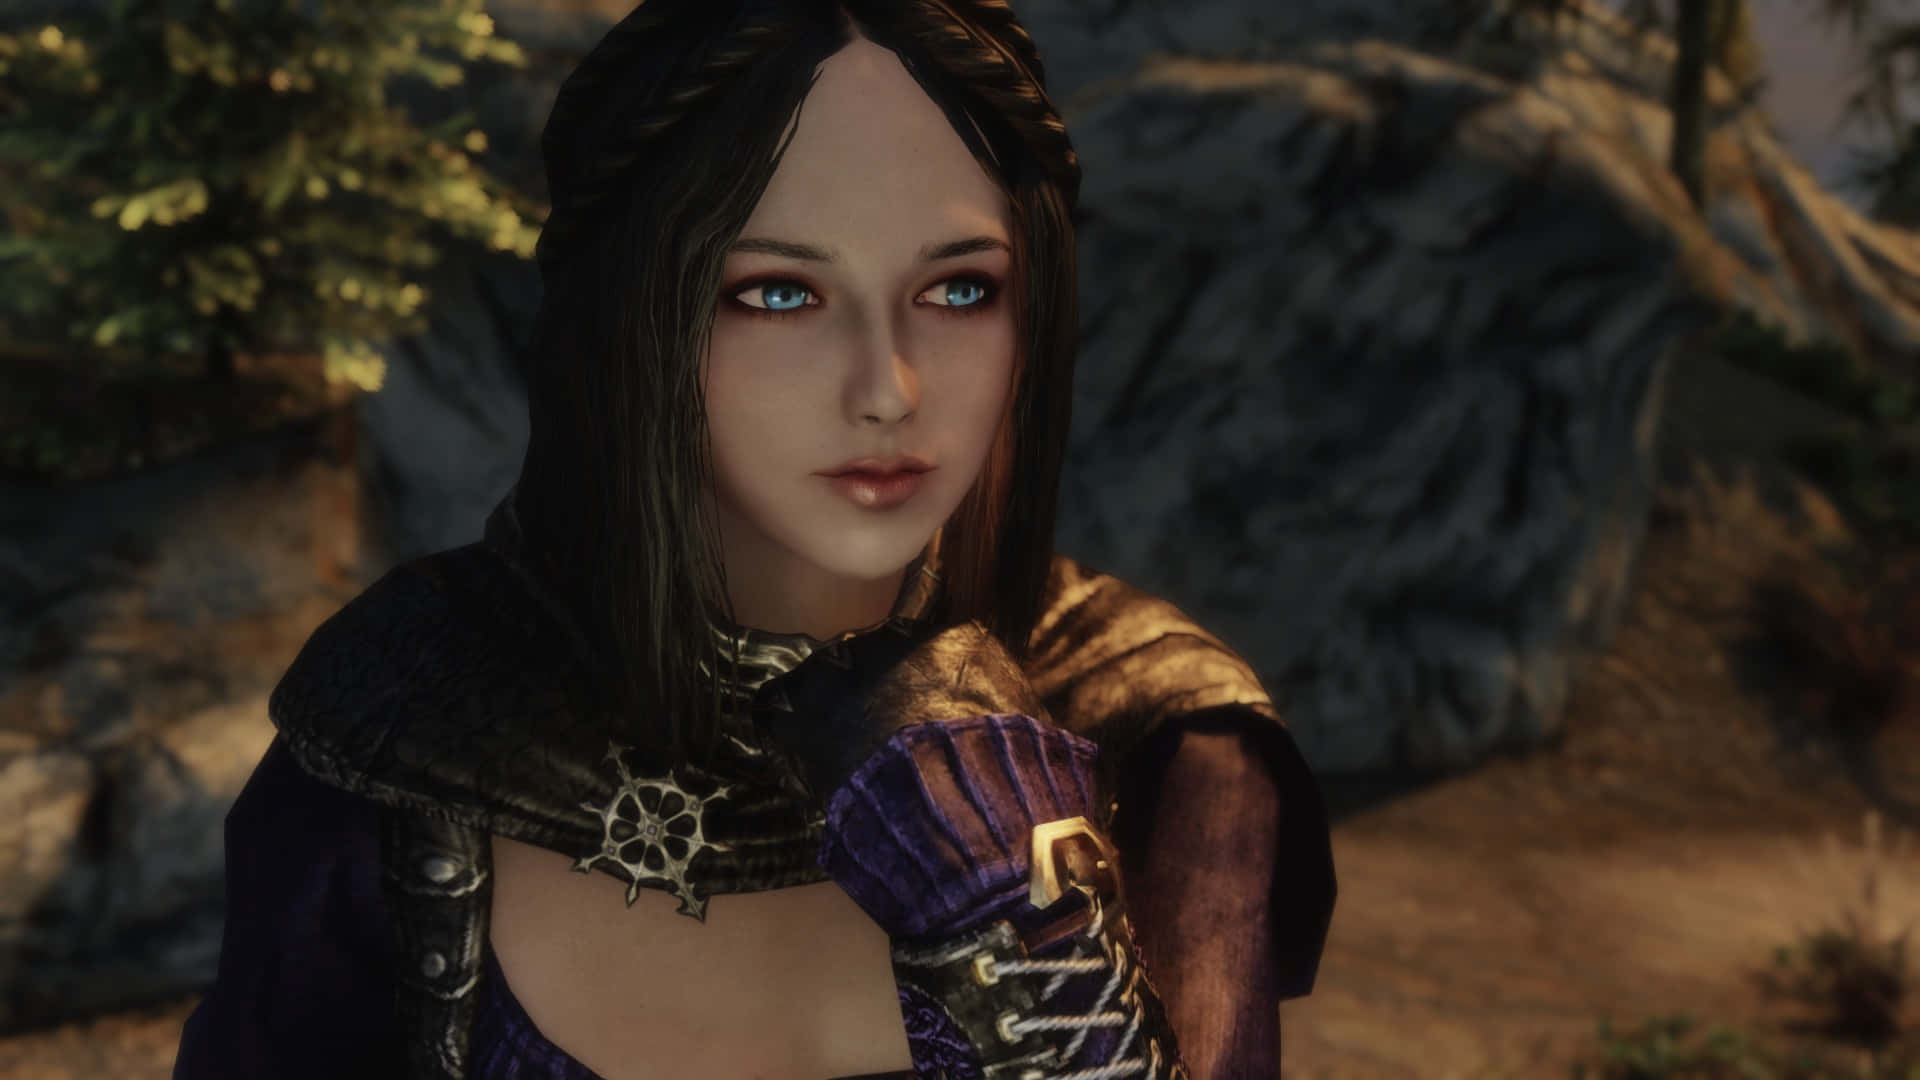 Serana, the Vampire Follower in Skyrim Wallpaper